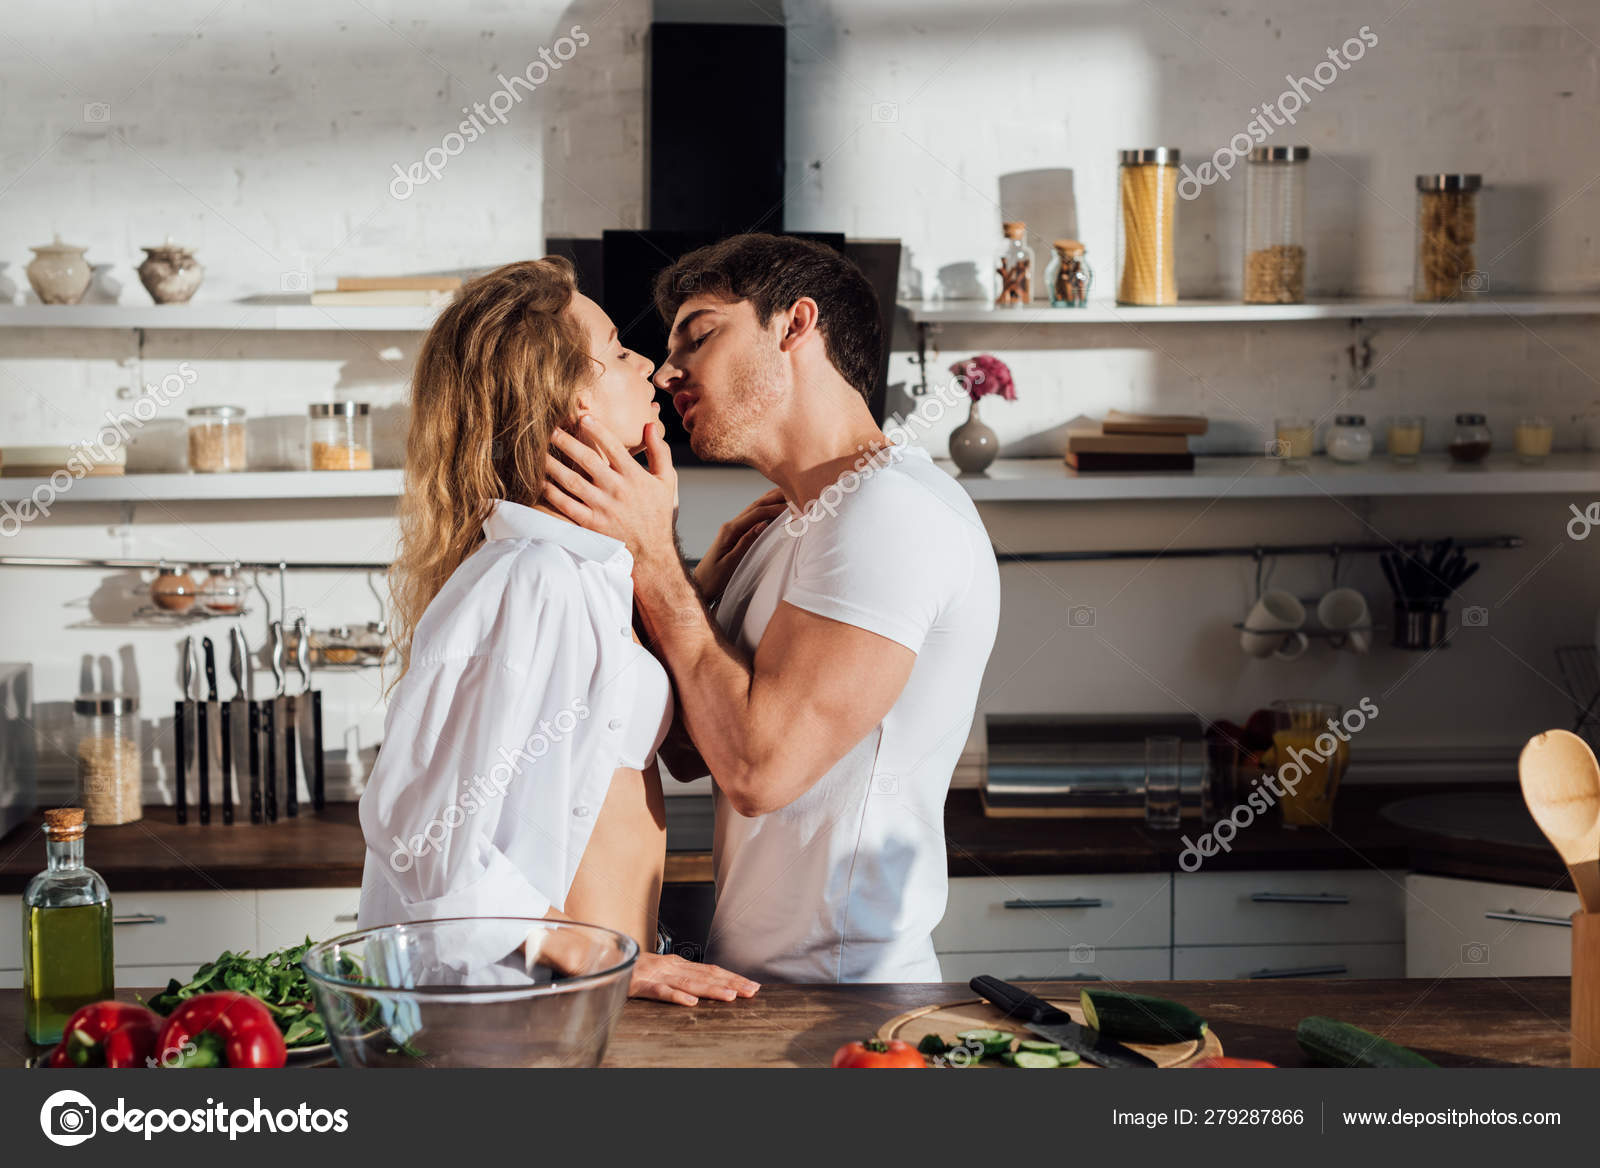 sexy romance in kitchen